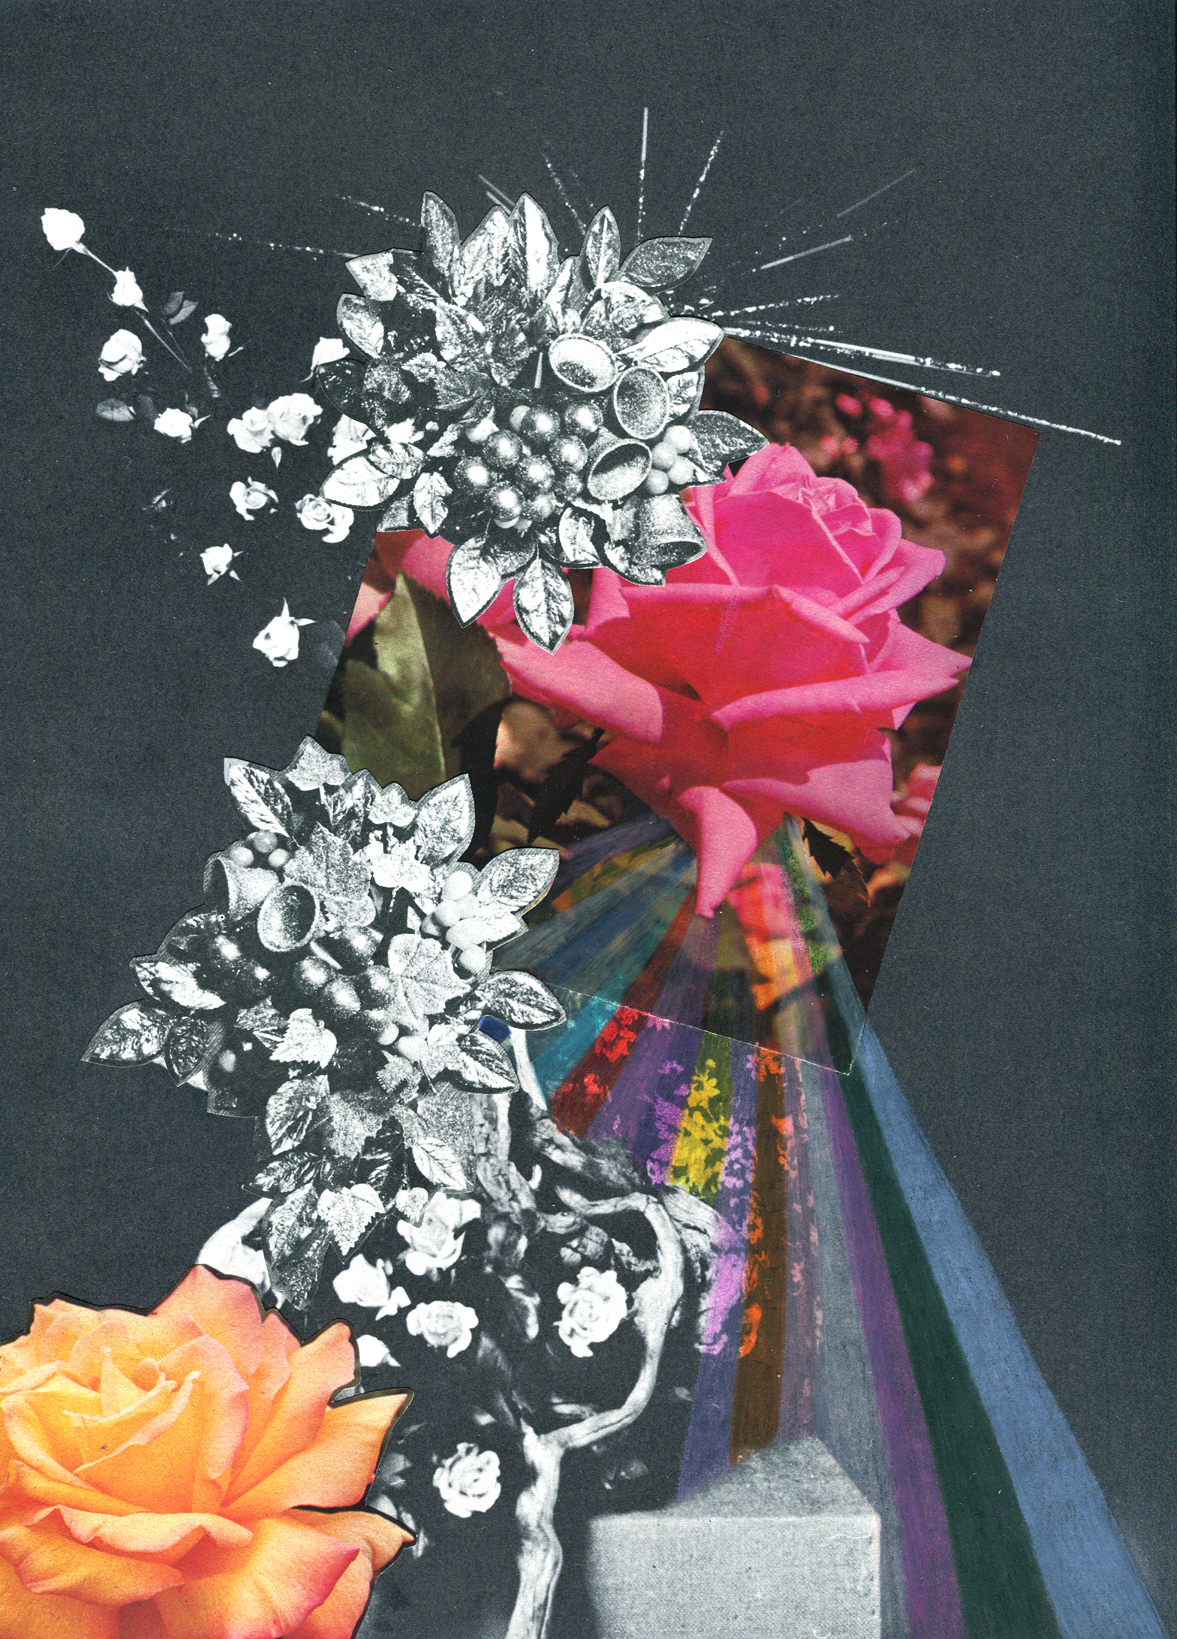 Rainbow Rose Garden #6, collage, found paper, pencil